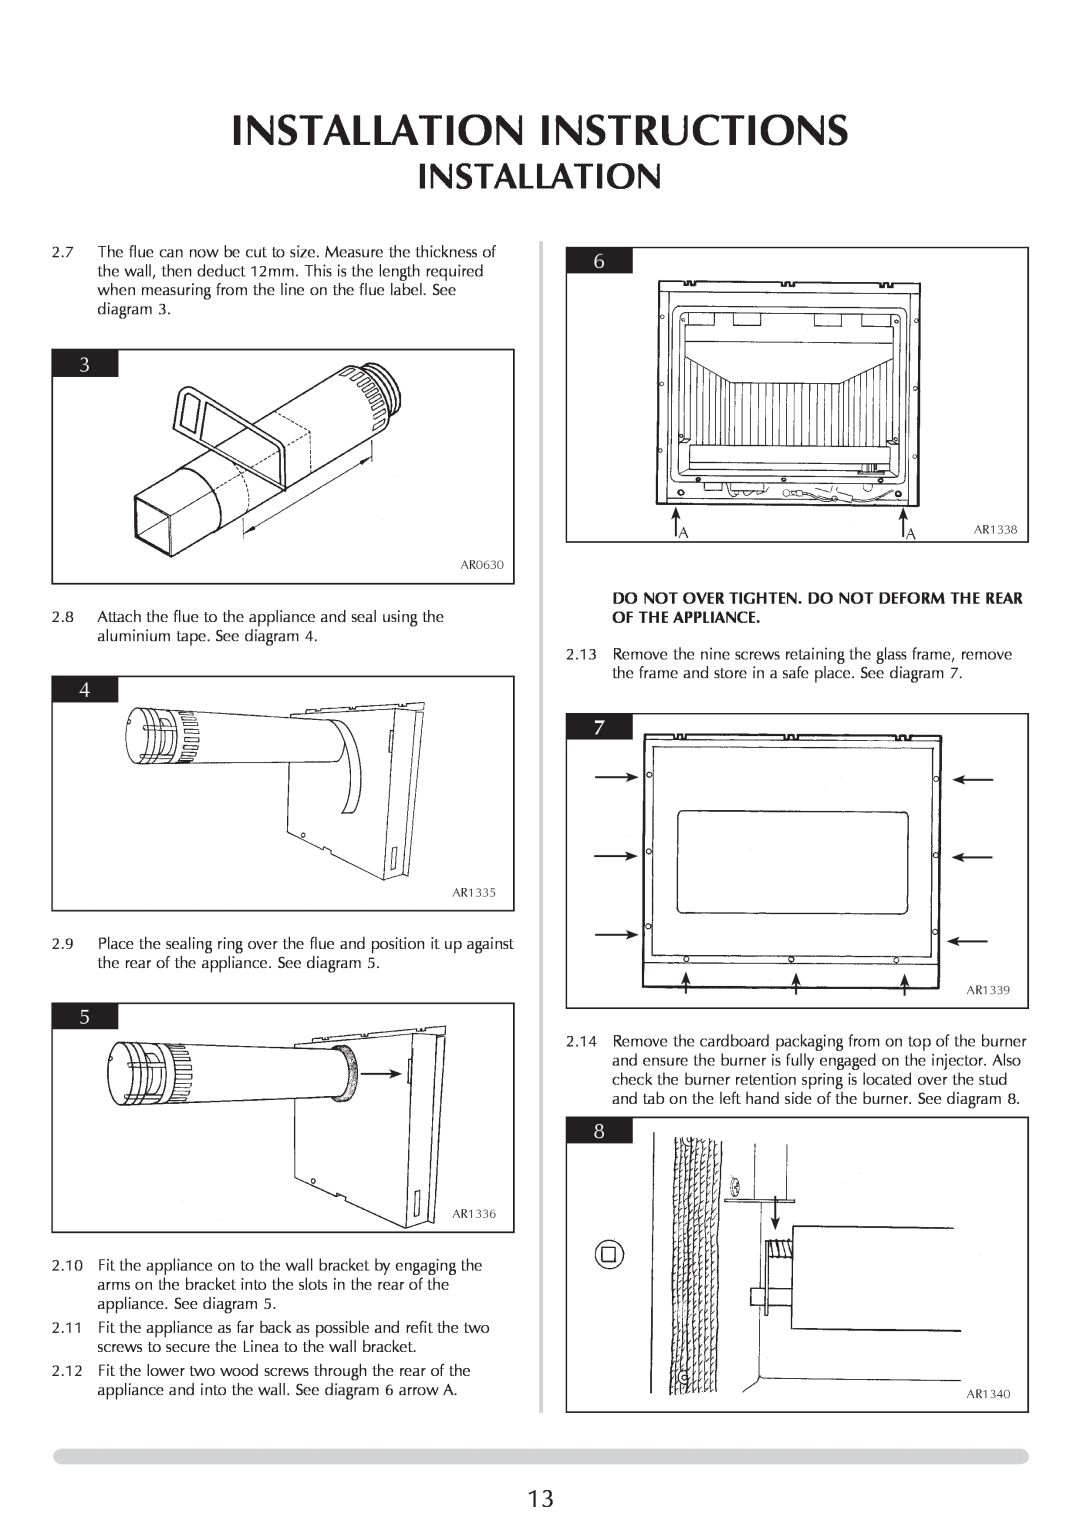 Stovax PR0731 manual Installation Instructions 